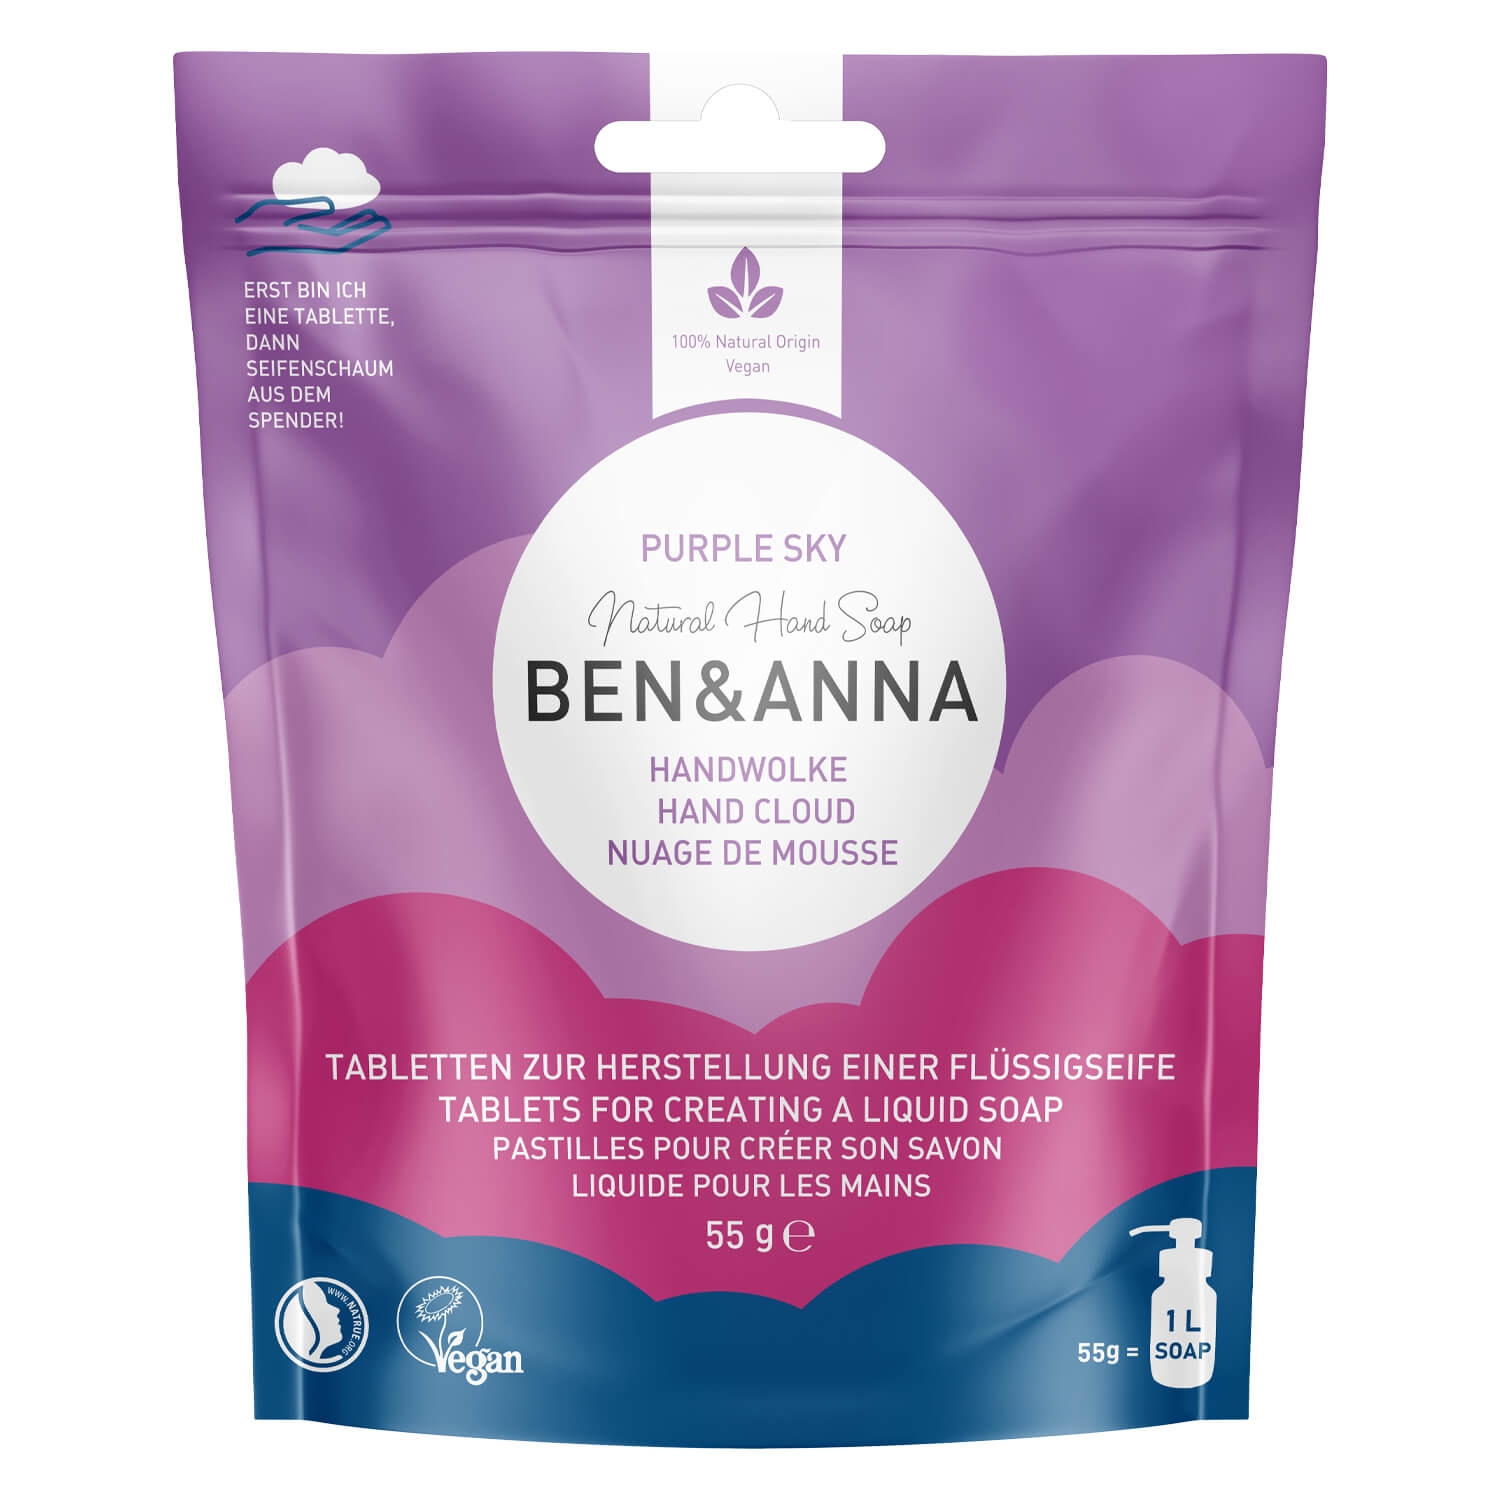 Produktbild von BEN&ANNA - Handwolke Purple Sky